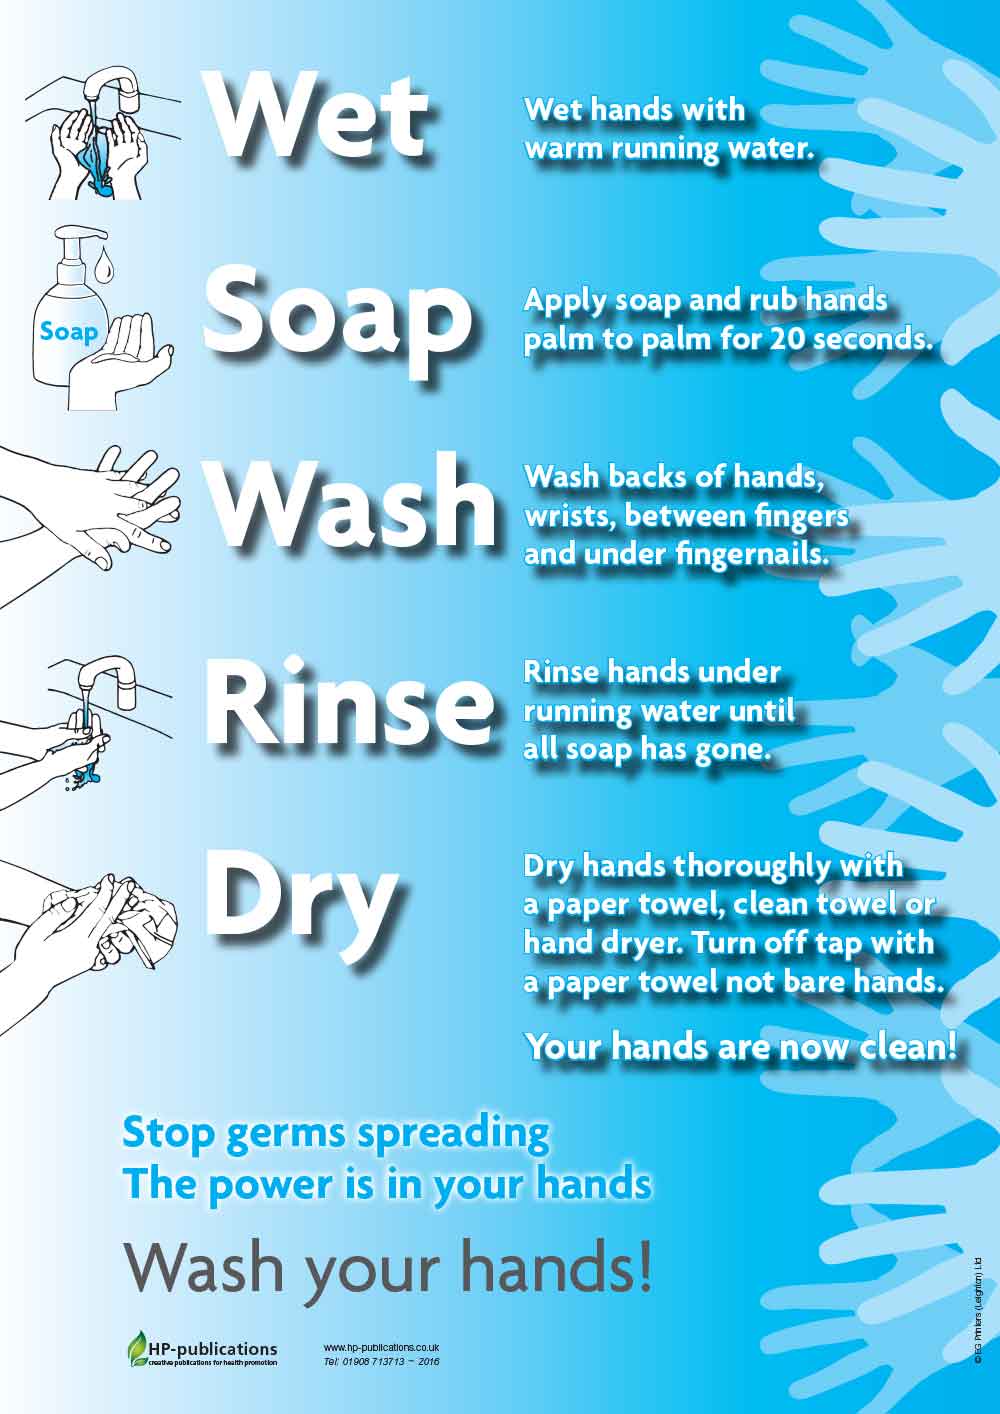 Wet: Soap: Wash: